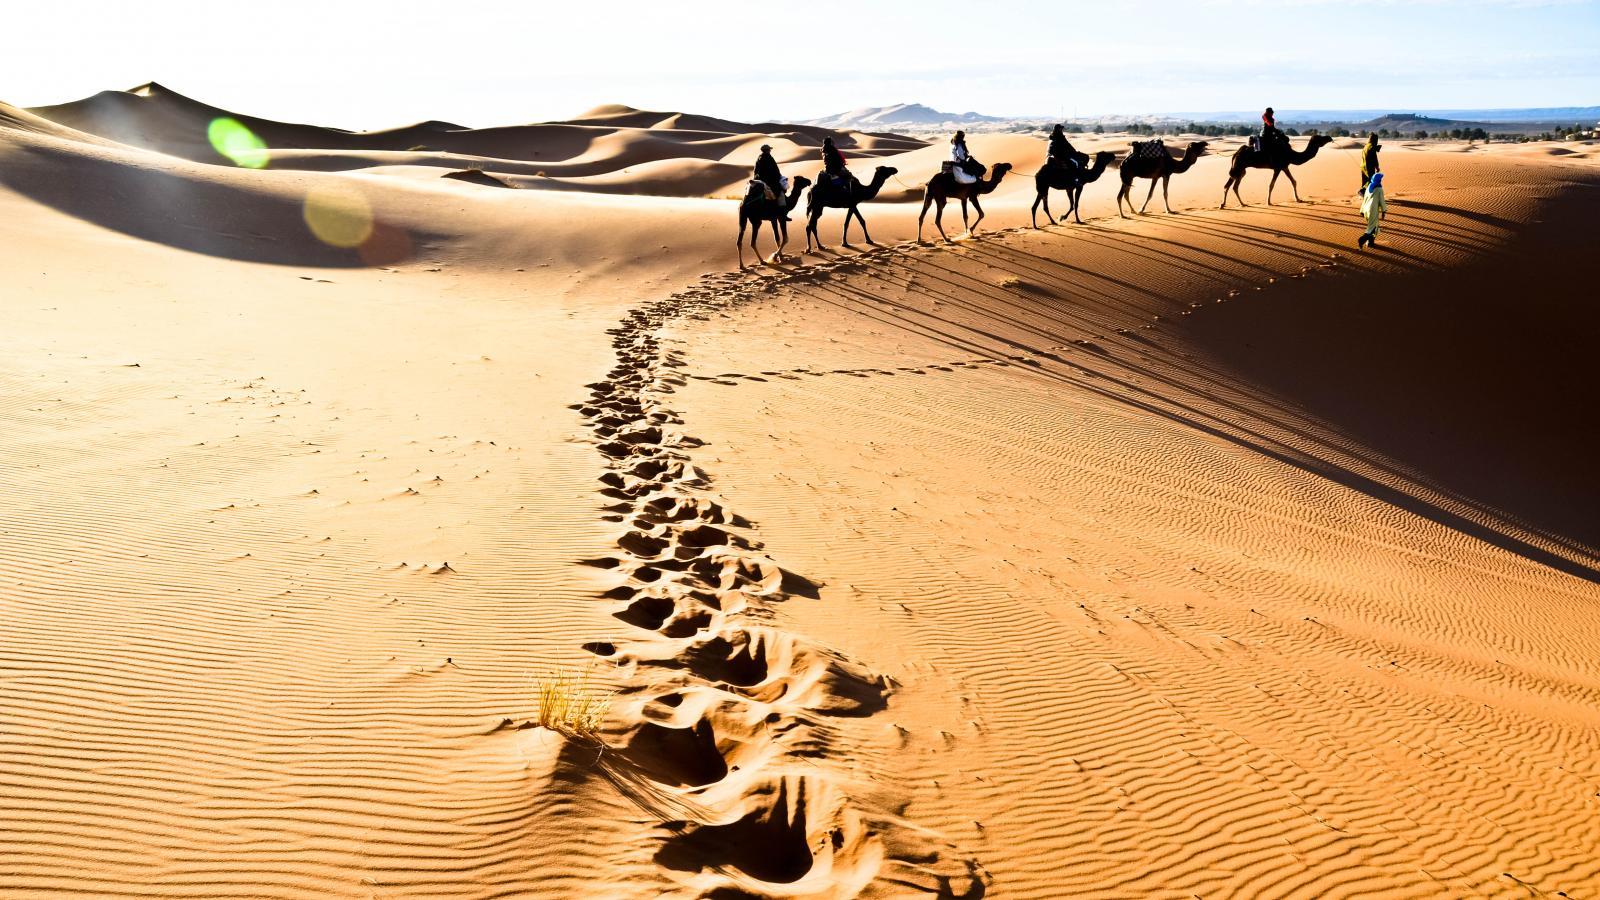 Сафари в Сахару это возможность прикоснуться к тайнам